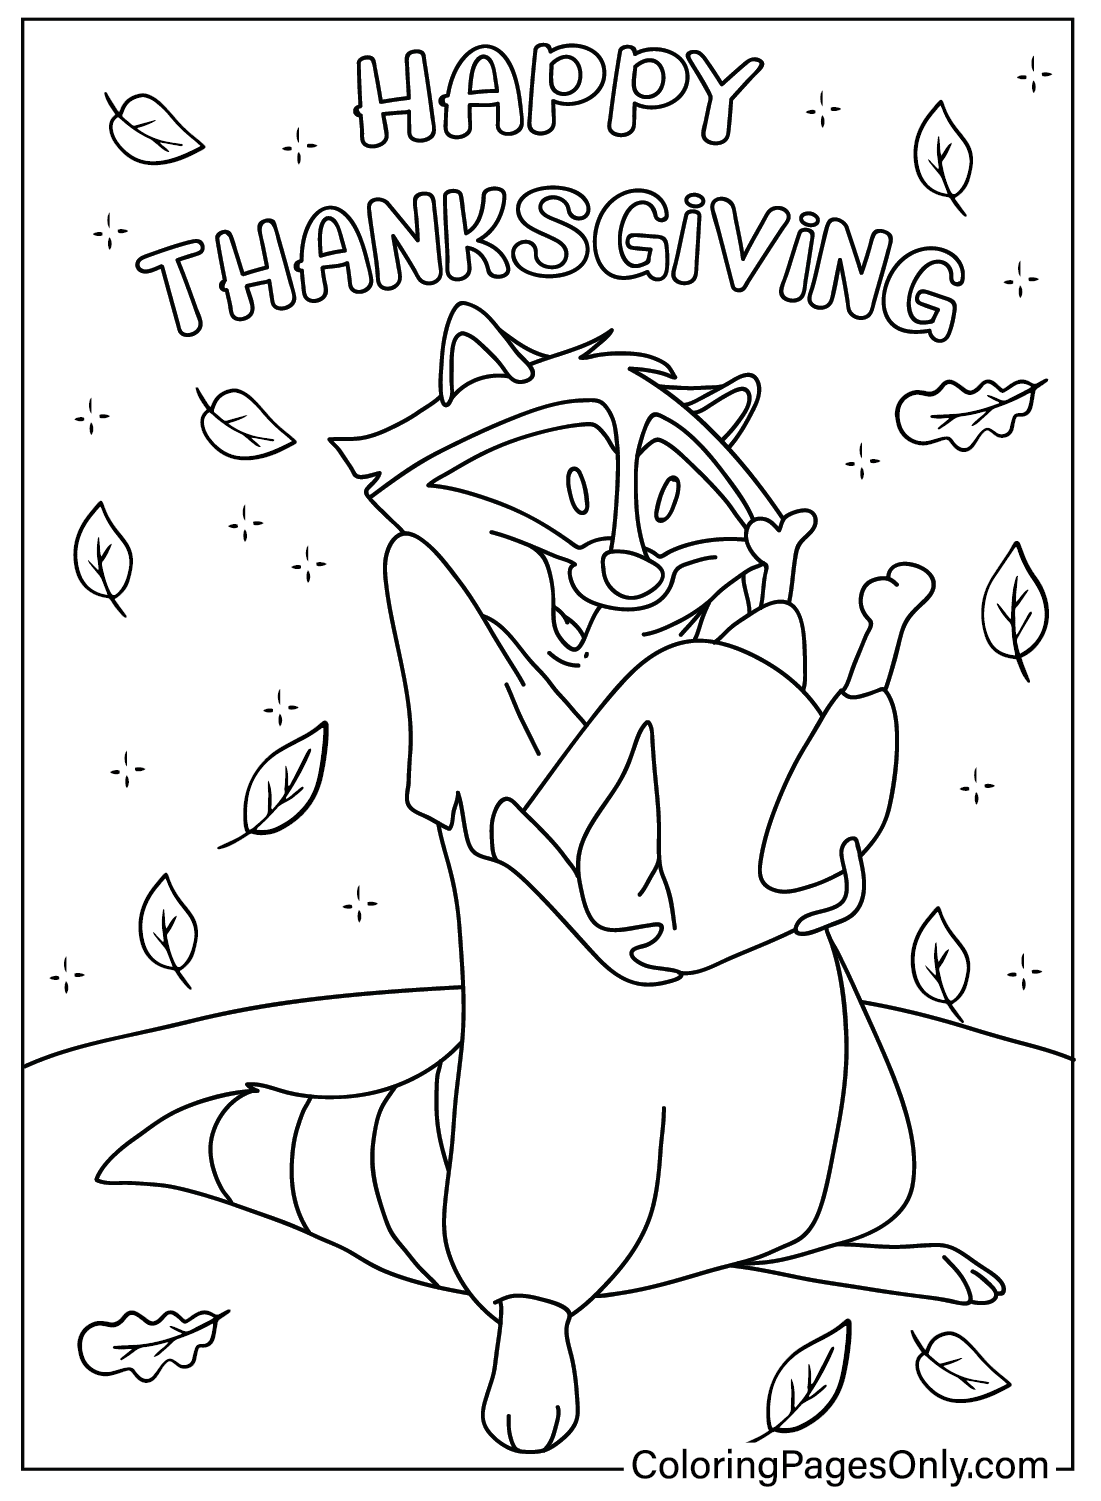 Página para colorear de Acción de Gracias de Meeko Disney de Estoy agradecido por